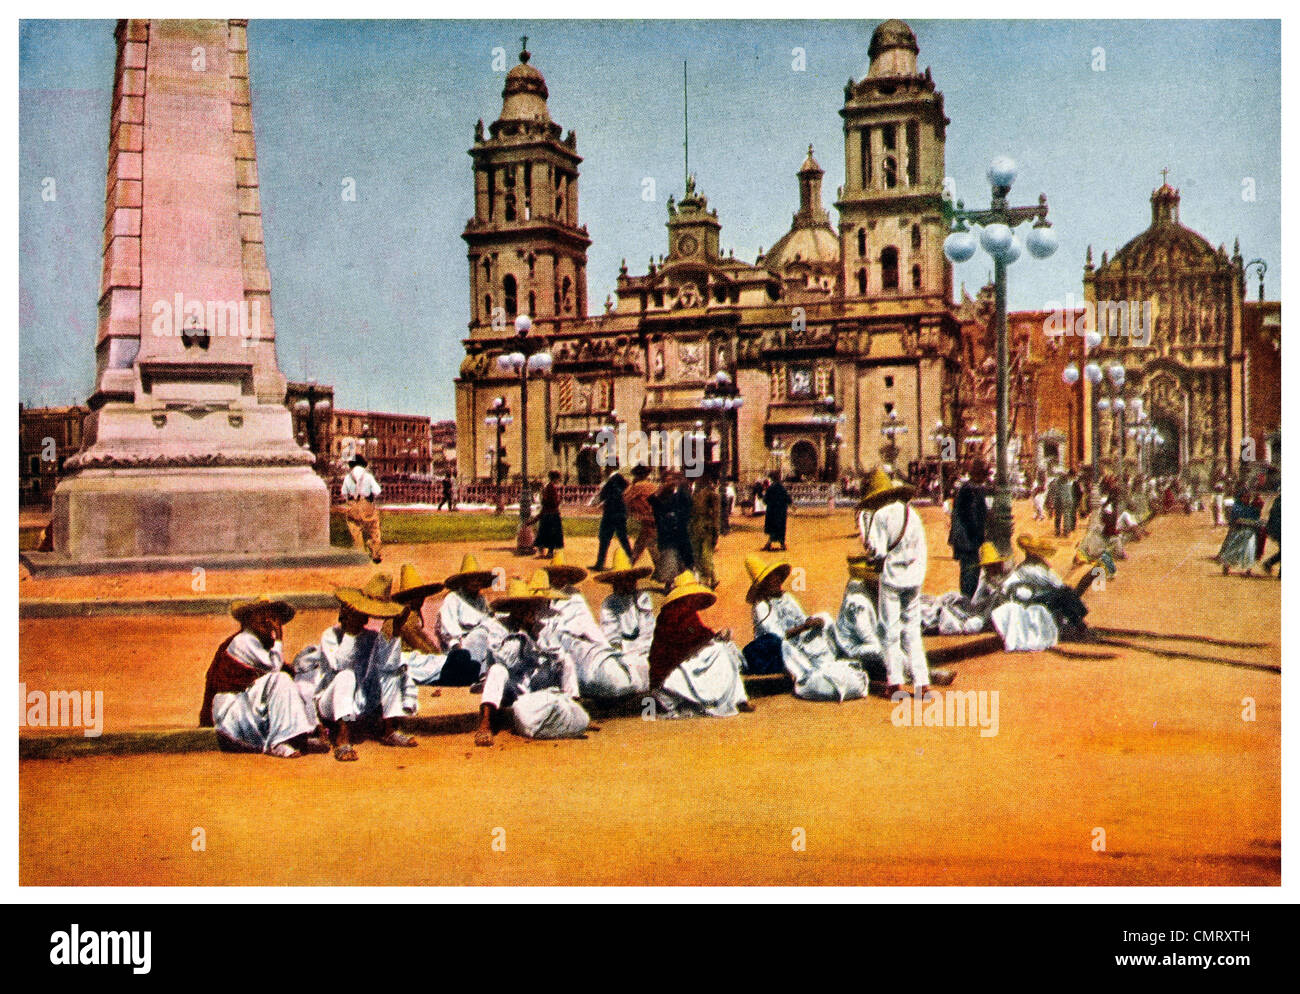 1923 Mexico City Market Zocalo square or Plaza Mayor Stock Photo